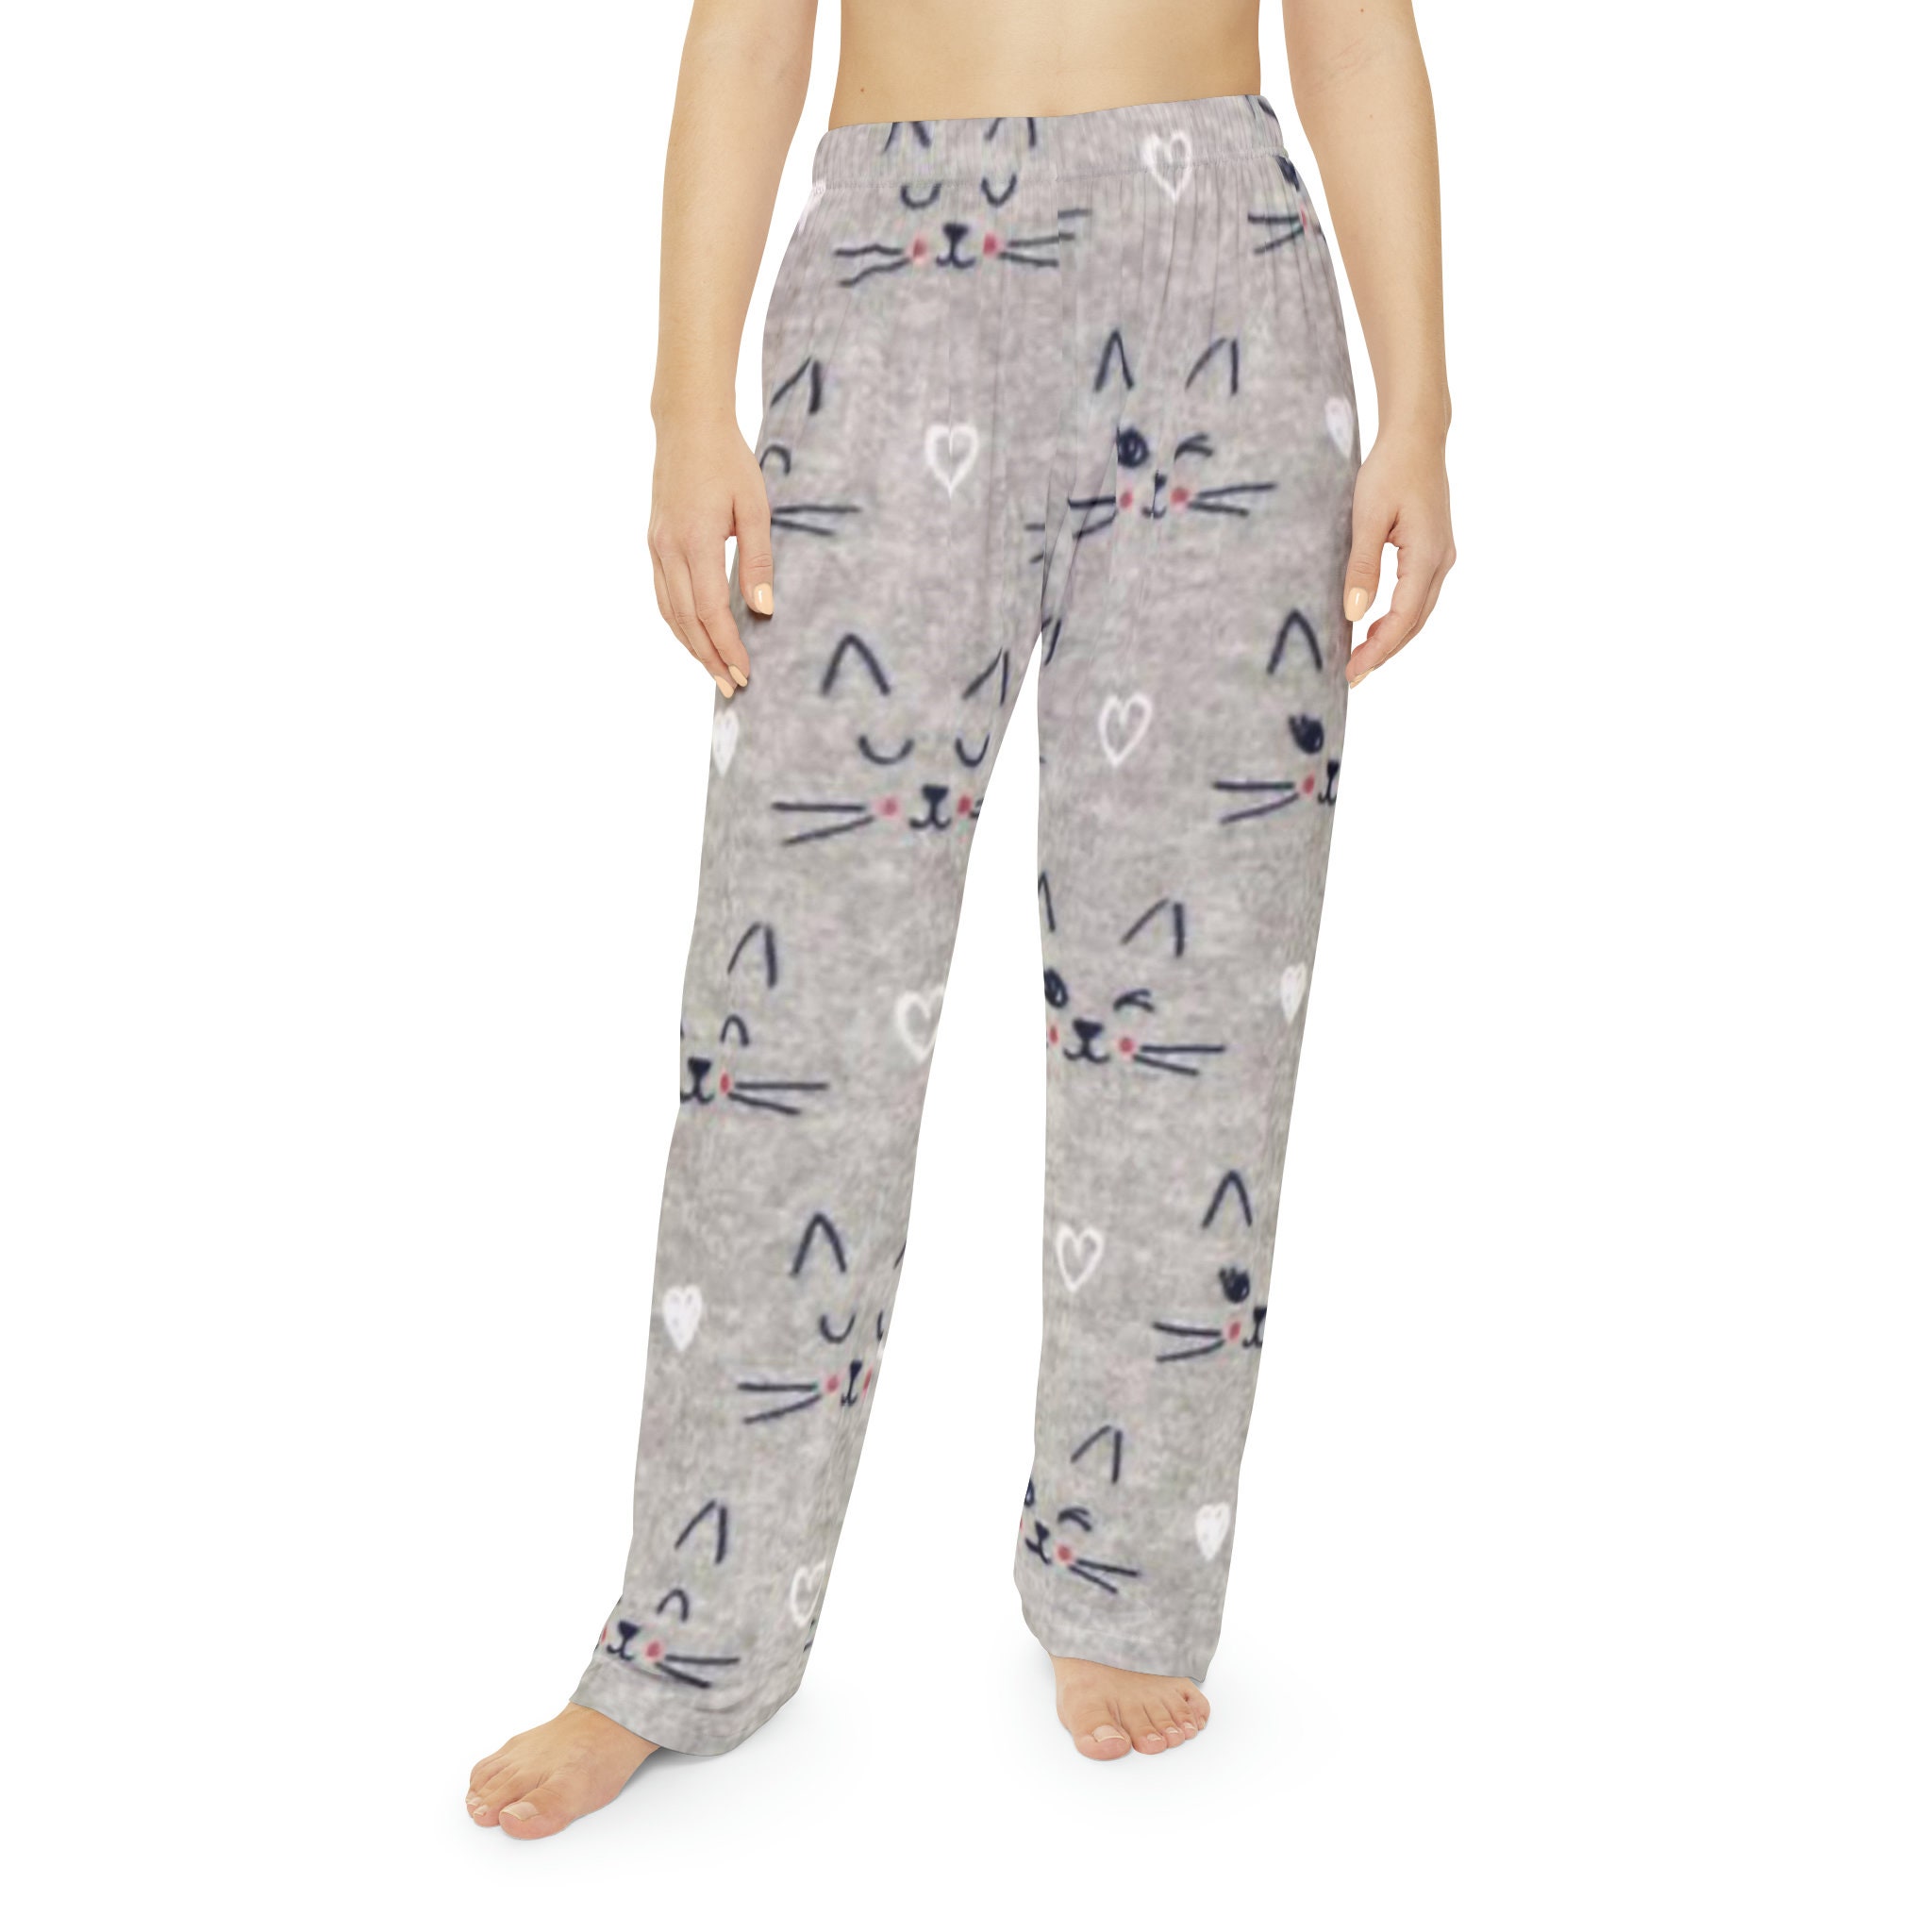 Ladies Cat Faces Pajama Pants, Whimsical Pj Pants, Cat Lover